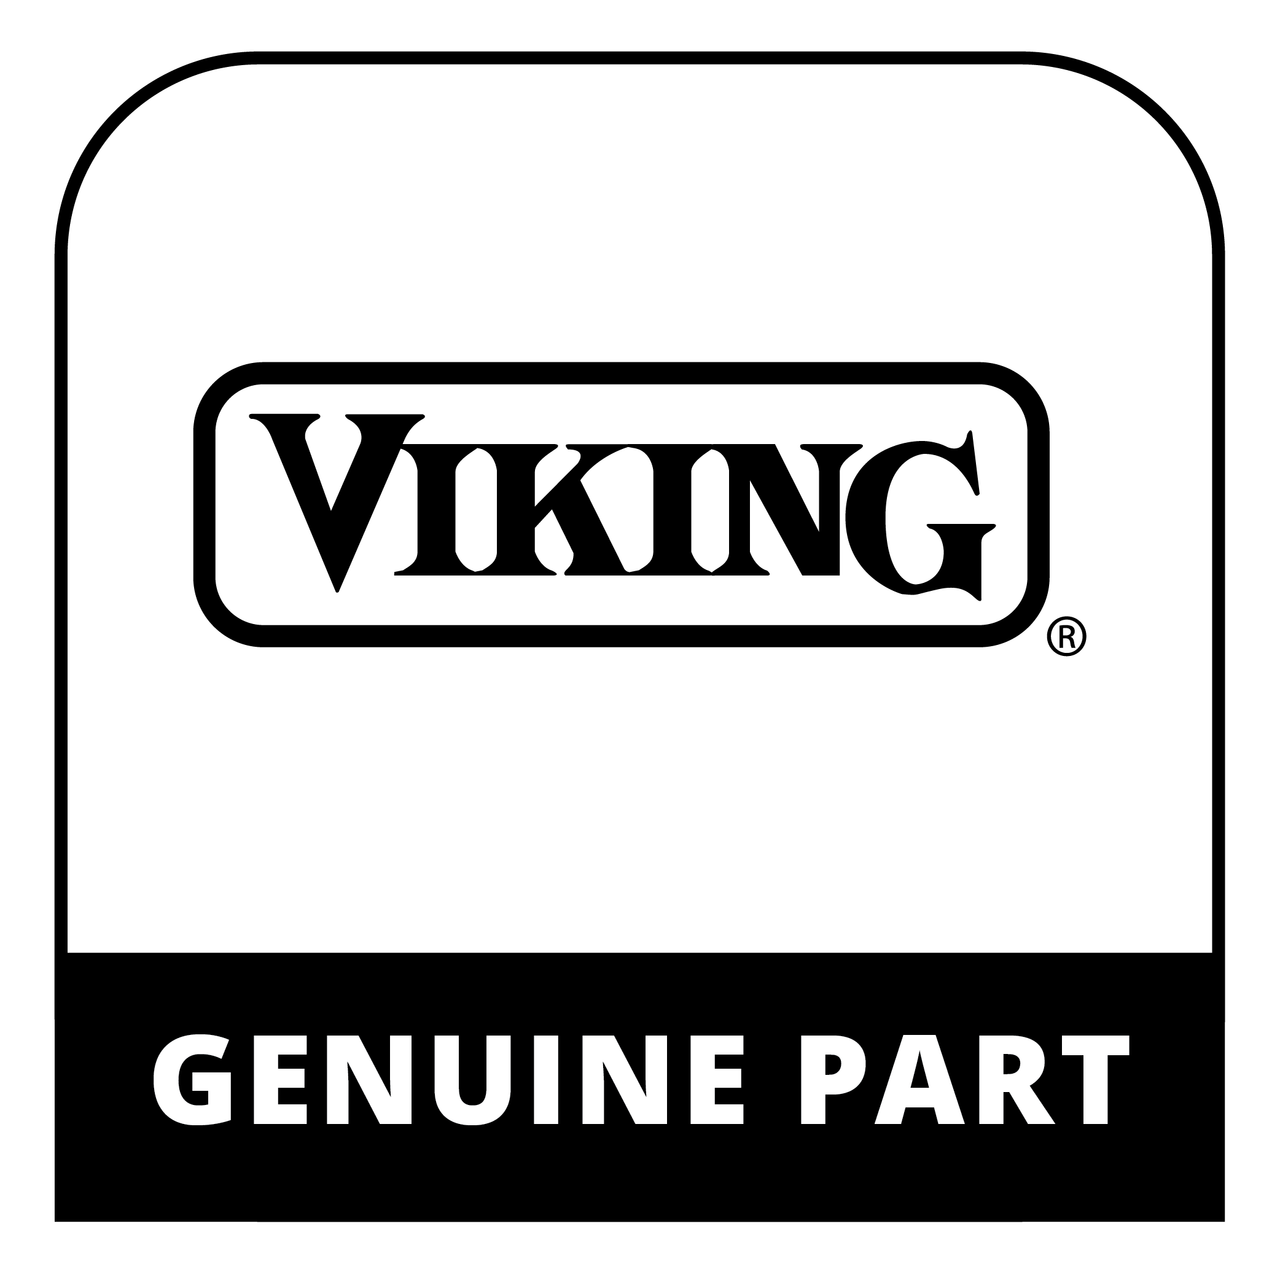 Viking 010081-000 - HANDLE STAINLESS STEEL - Genuine Viking Part